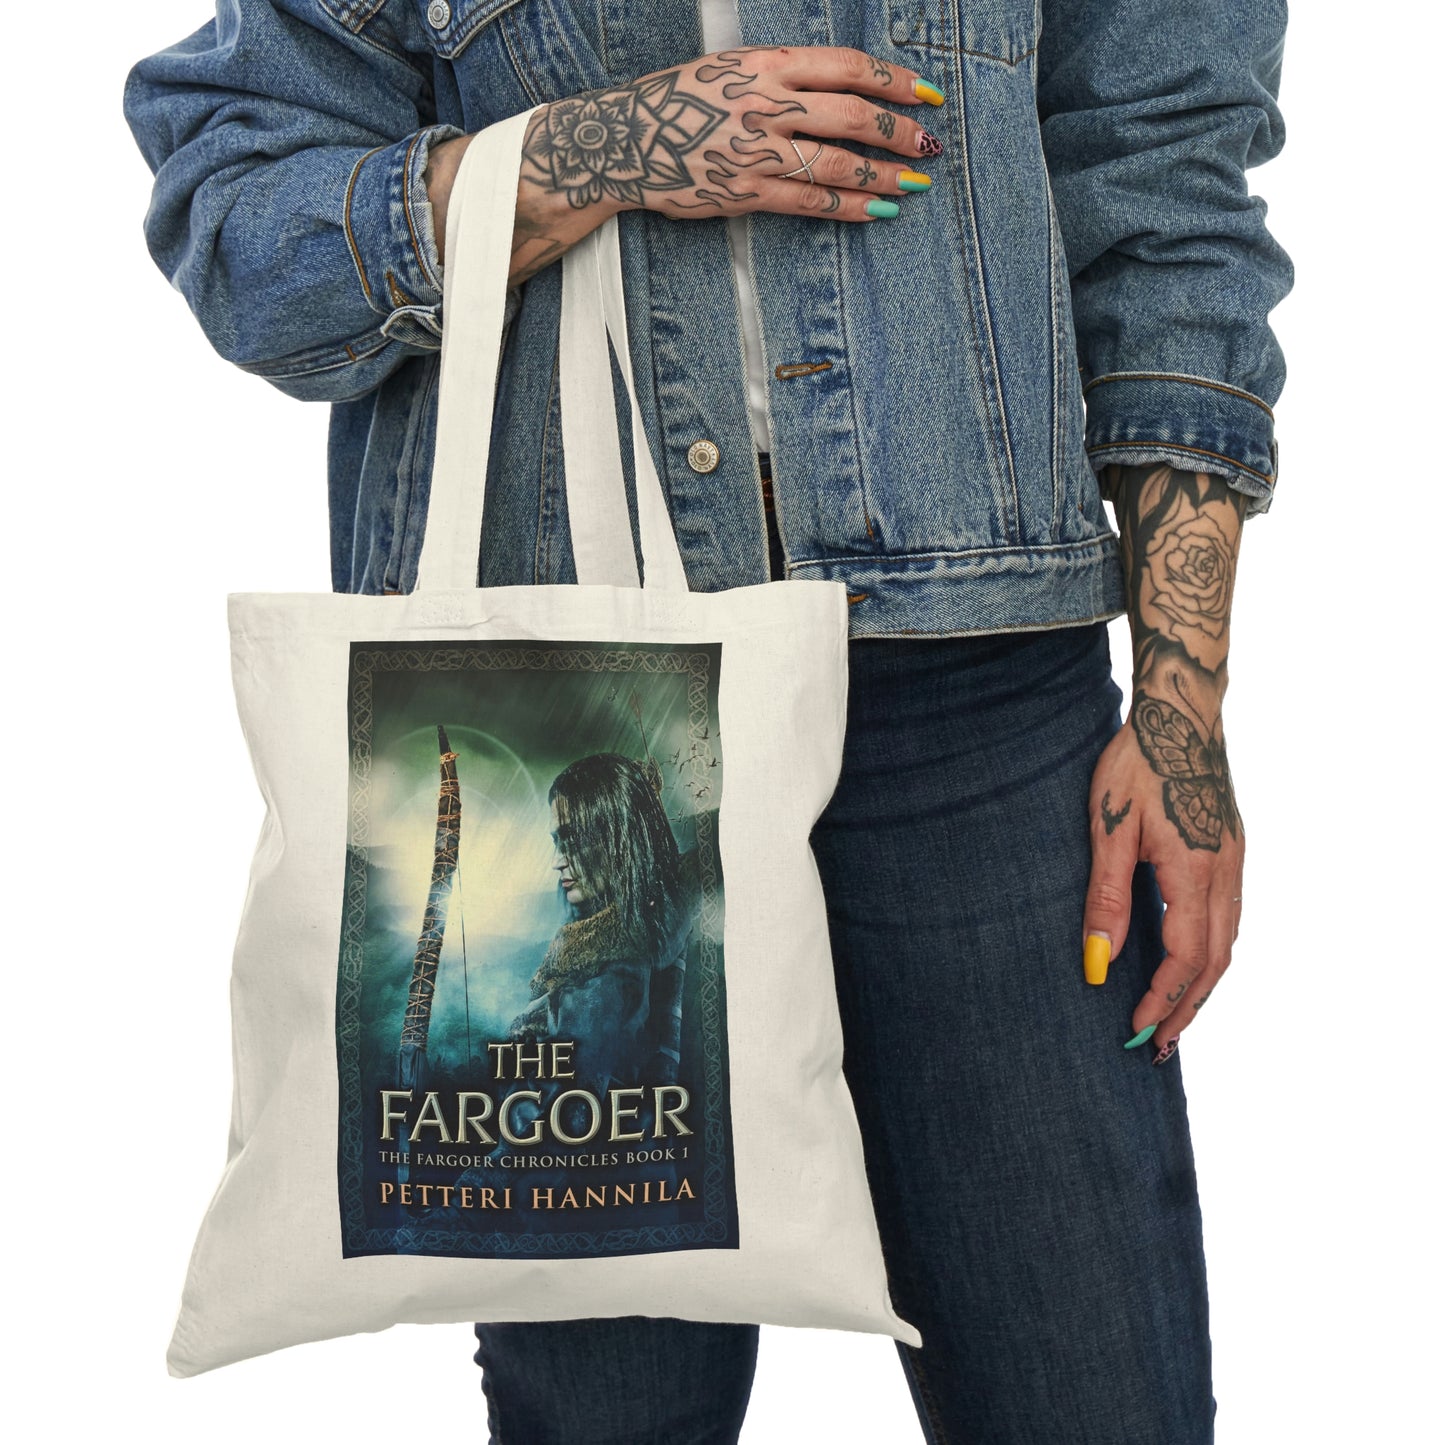 The Fargoer - Natural Tote Bag